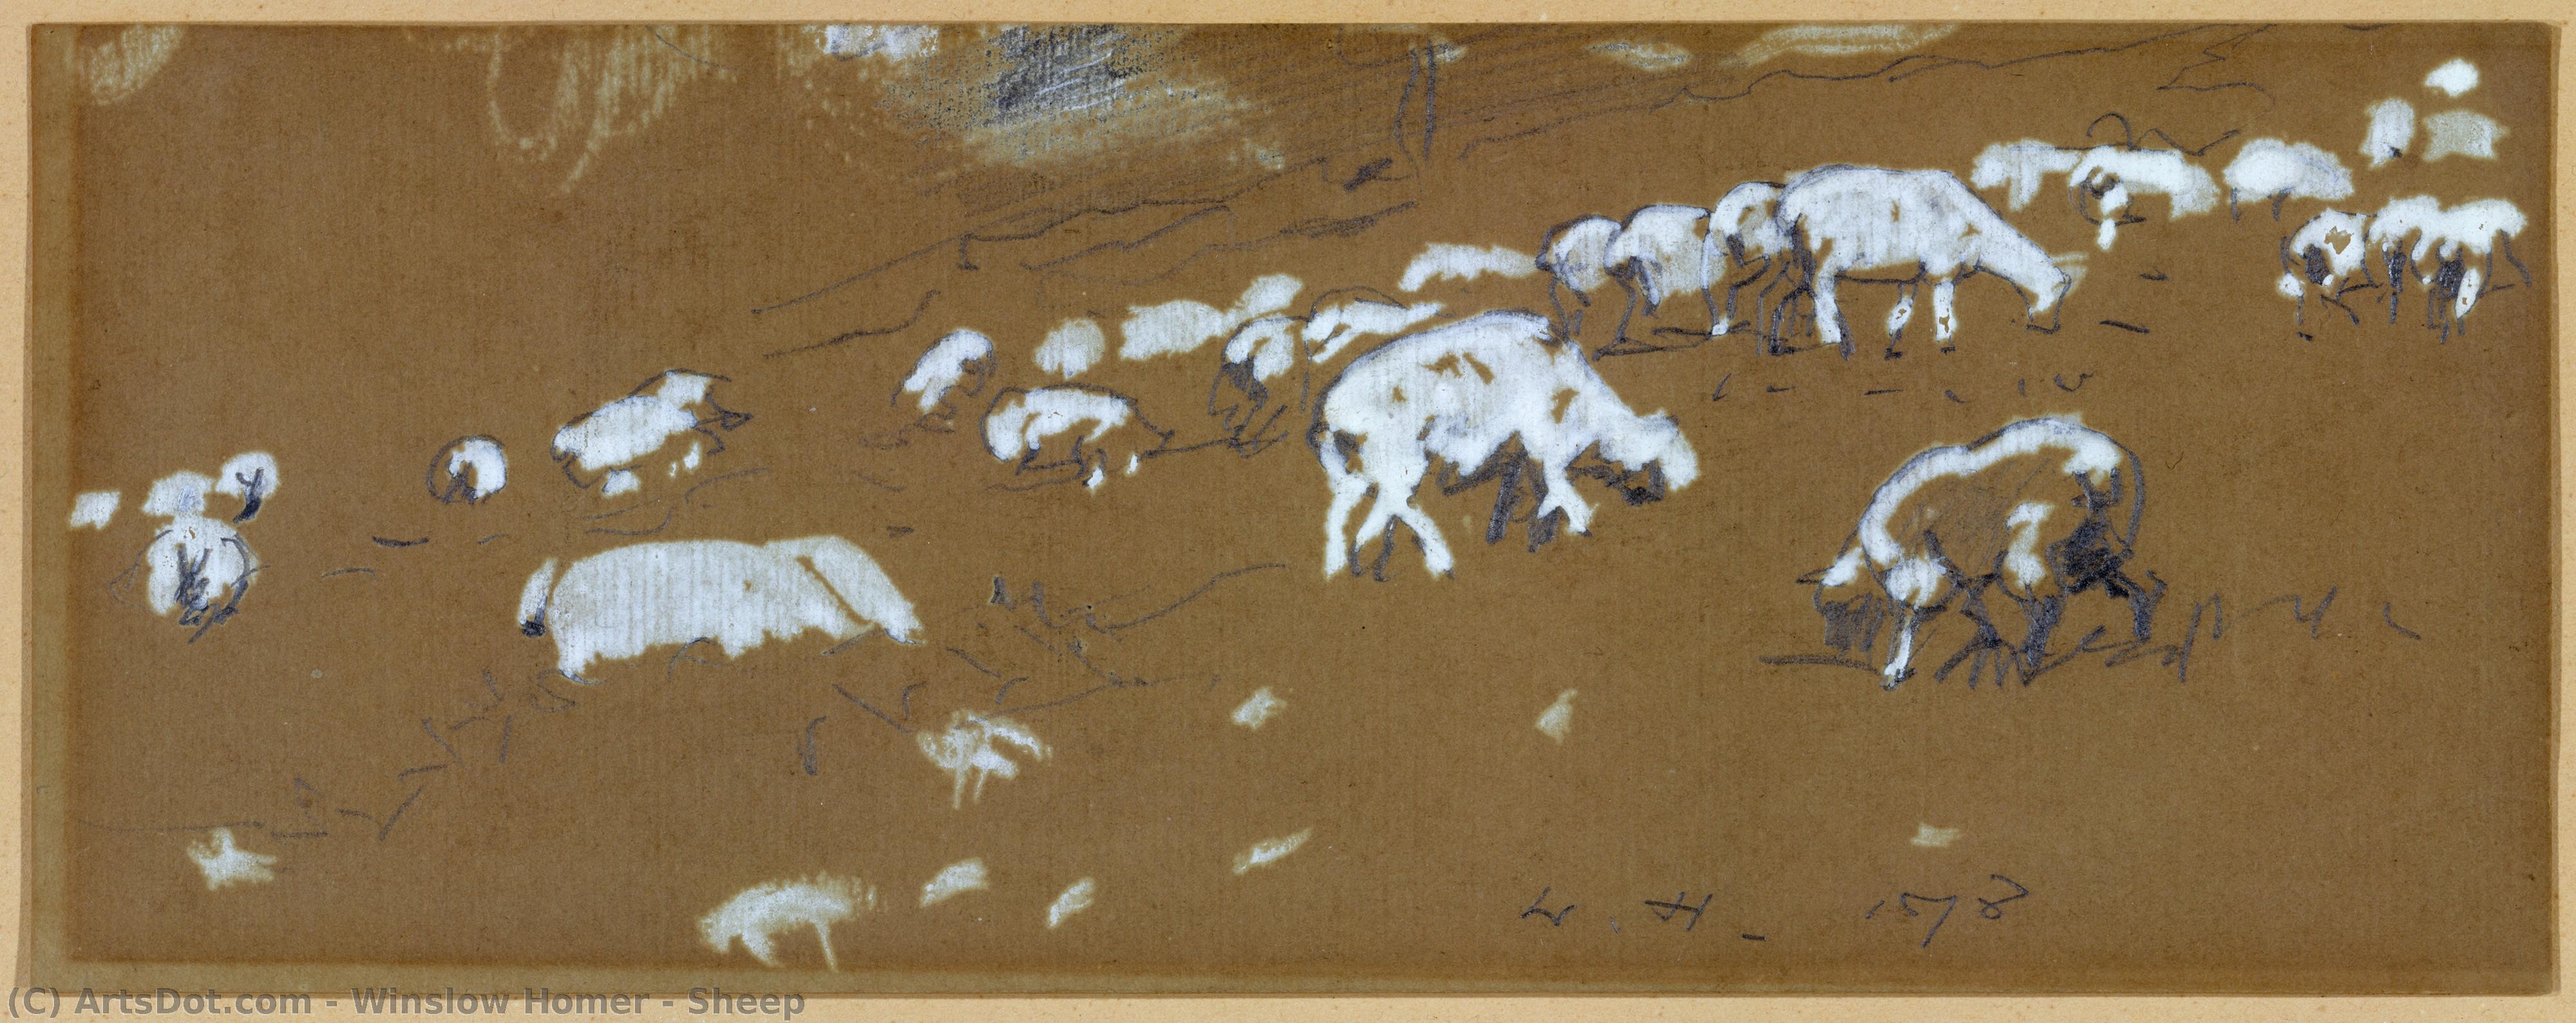  Artwork Replica Sheep, 1878 by Winslow Homer (1836-1910, United States) | ArtsDot.com